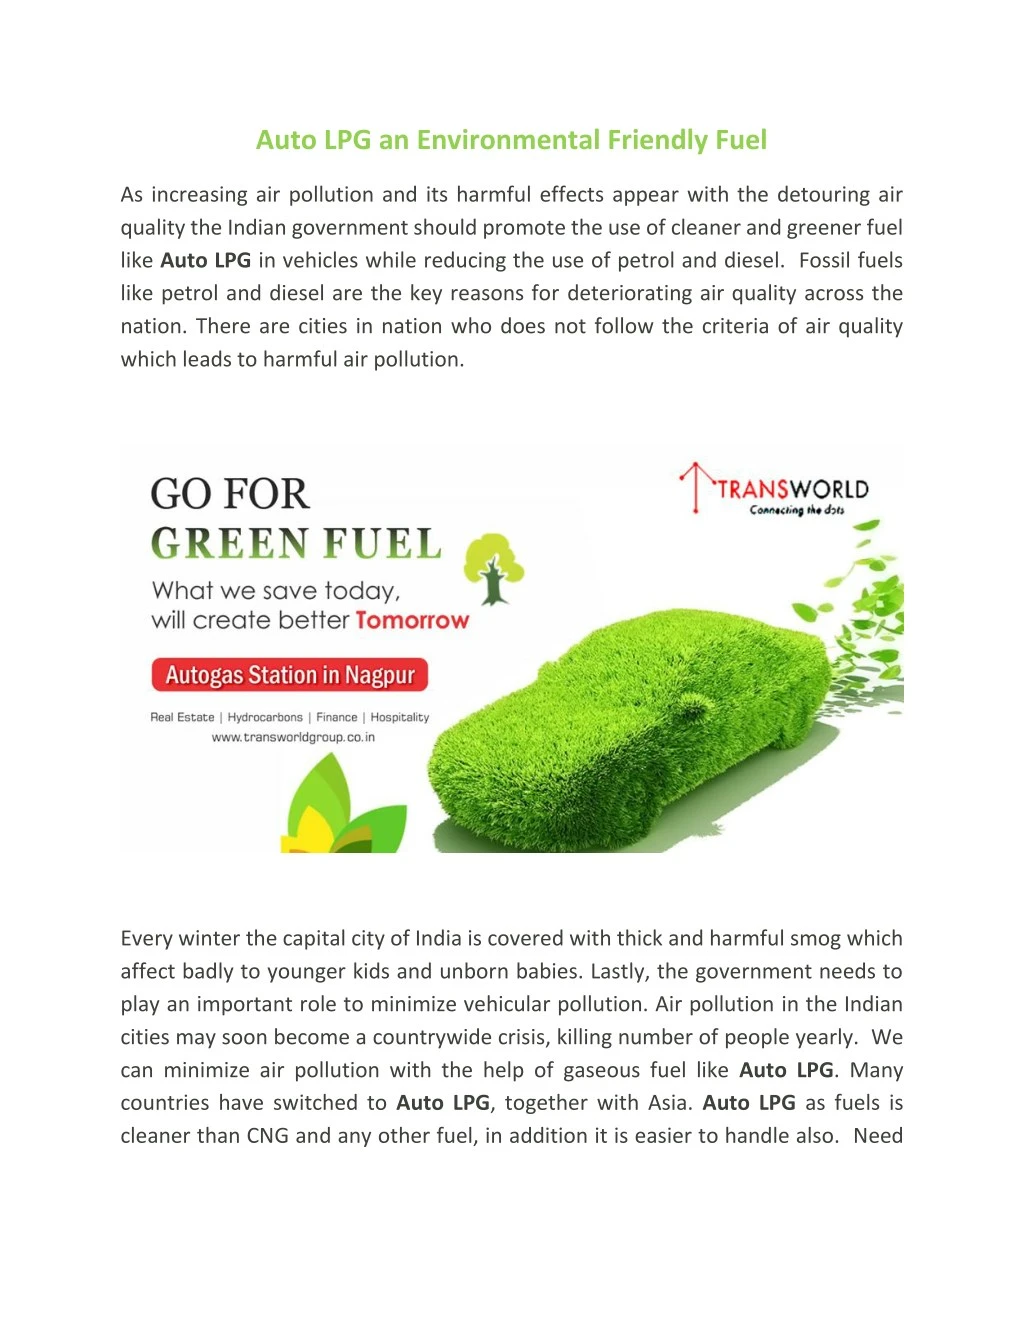 auto lpg an environmental friendly fuel